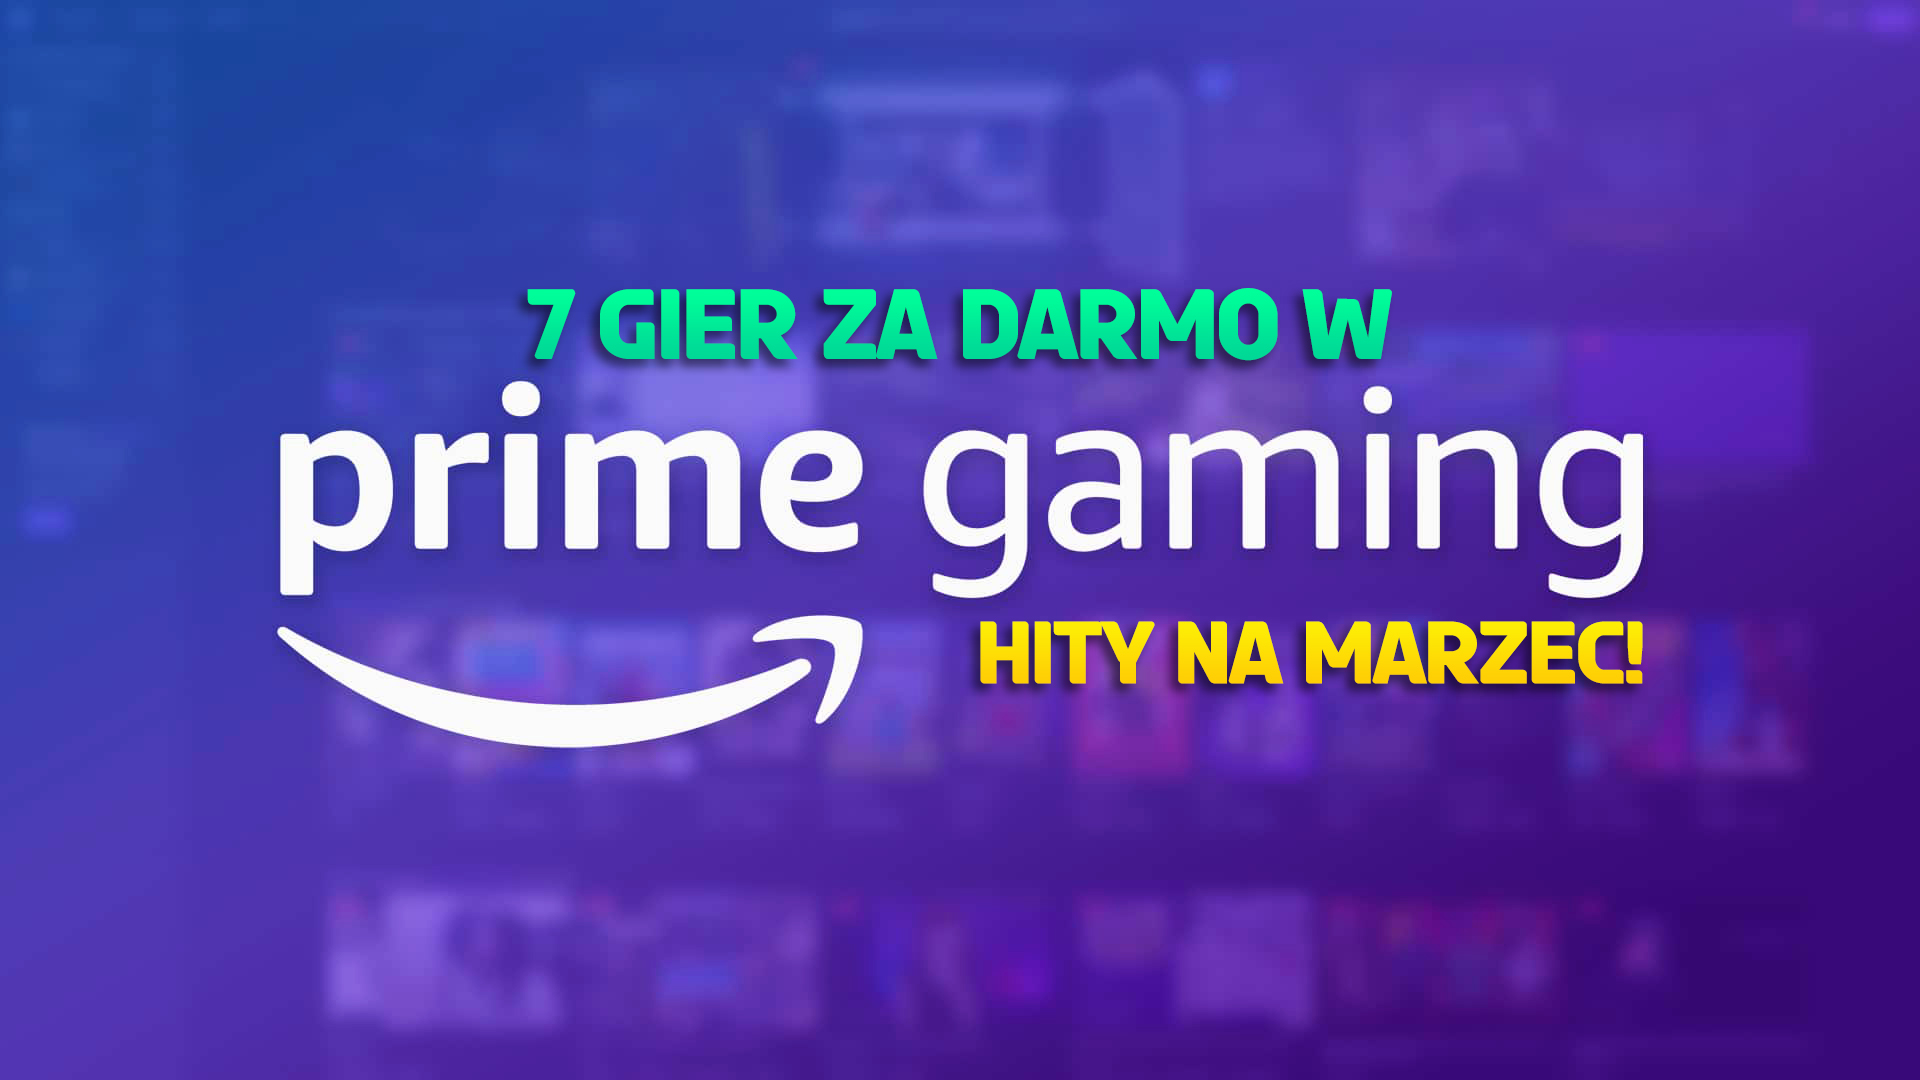 7 świetnych gier za darmo, czyli fantastyczna oferta Amazon Prime Gaming na marzec! Na liście dwa hity!